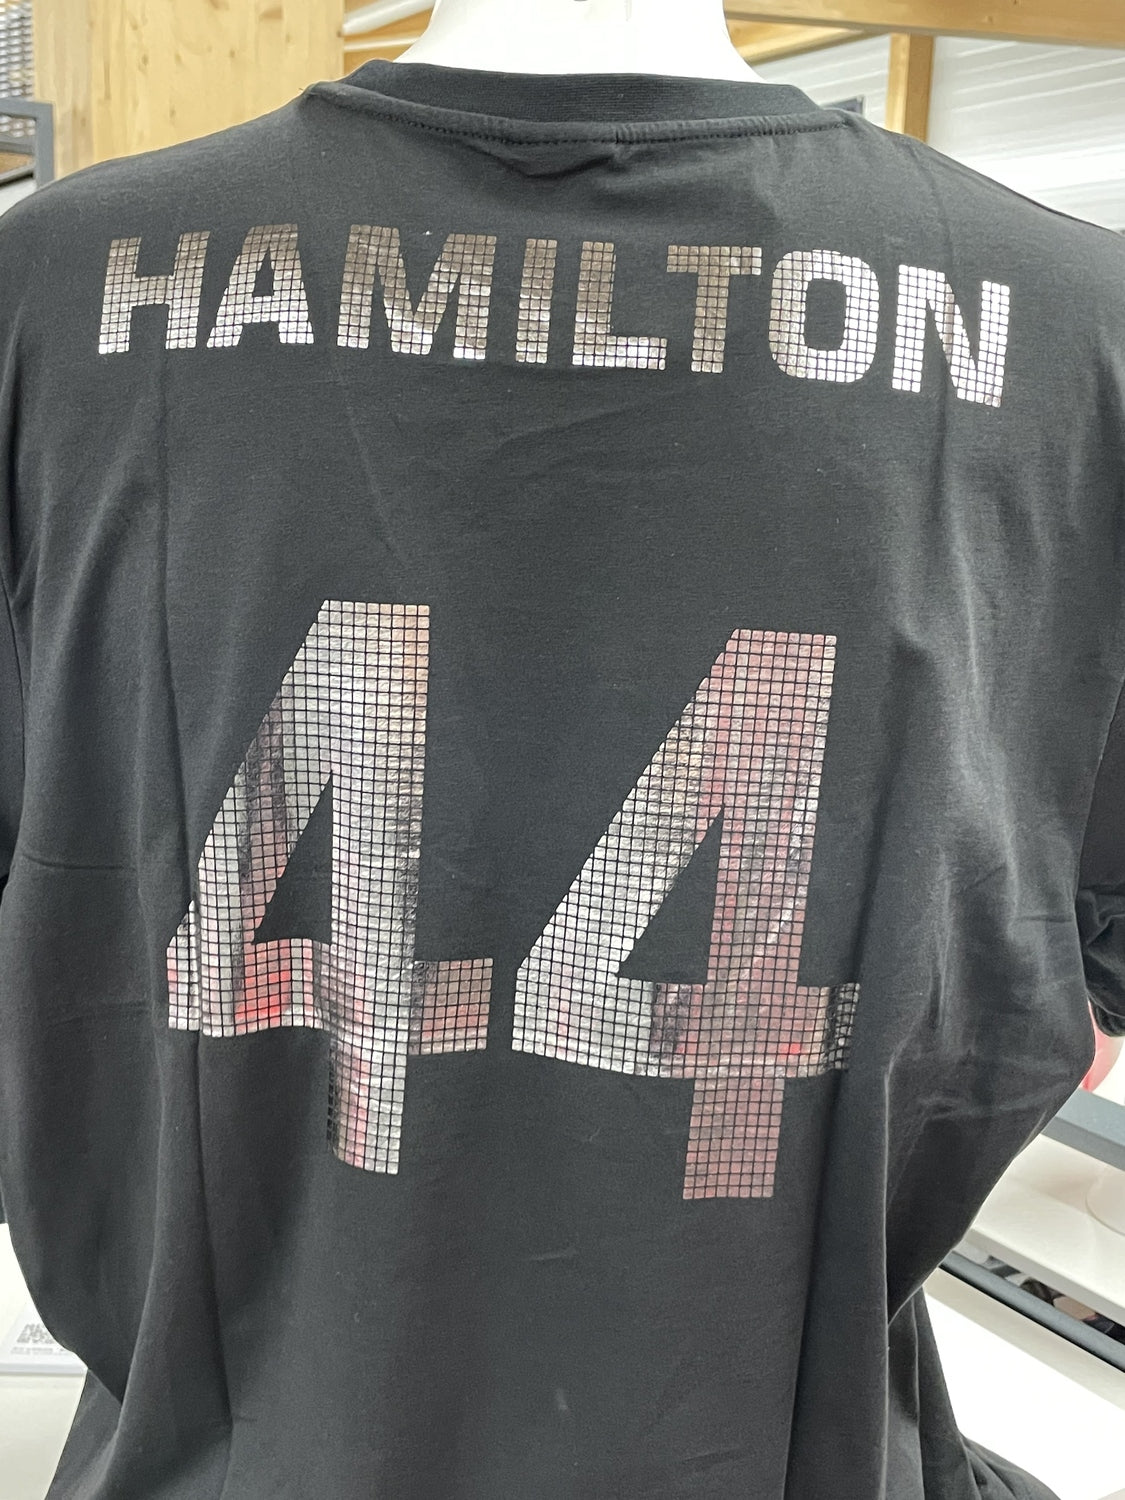 Premium Fan T-Shirt in schwarz mit Aufdruck F1 Lewis Hamilton World Champion 2014